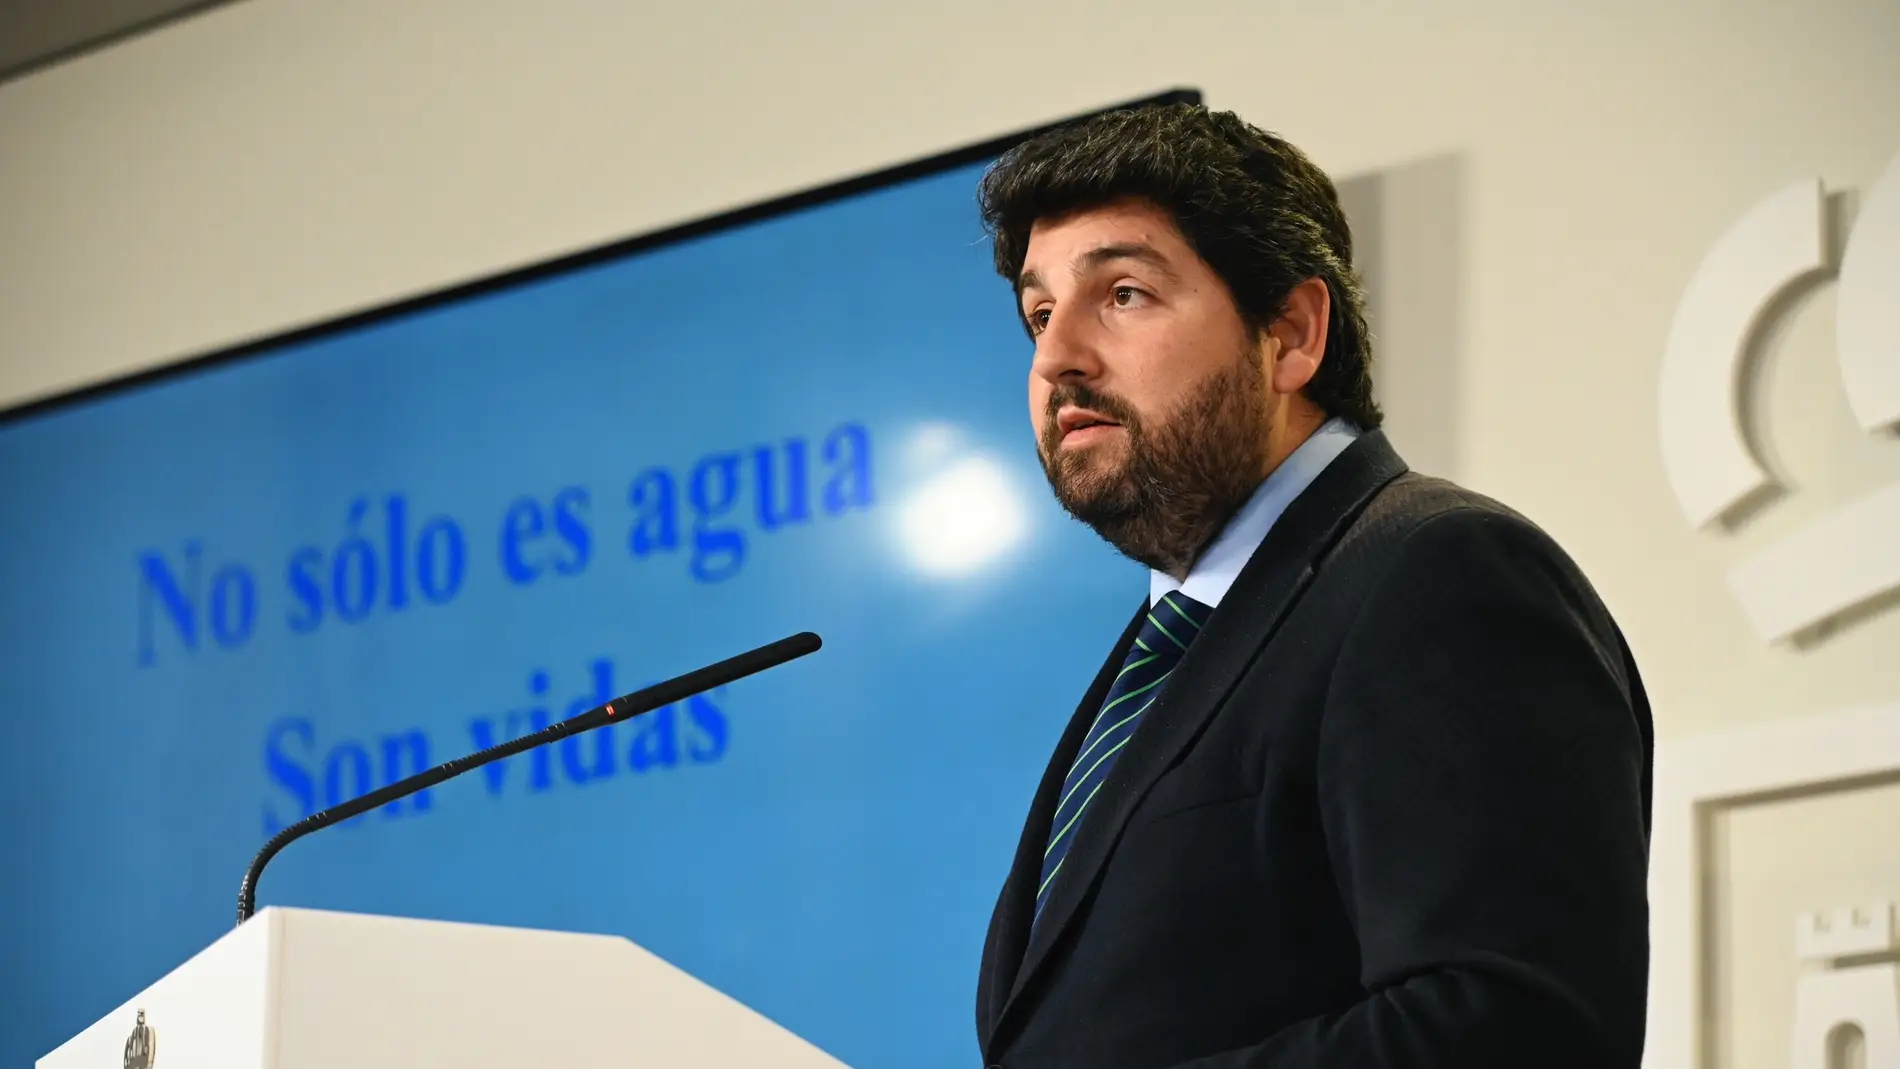 López Miras anuncia un recurso ante el Supremo "por el mayor ataque político perpetrado contra la Región de Murcia"